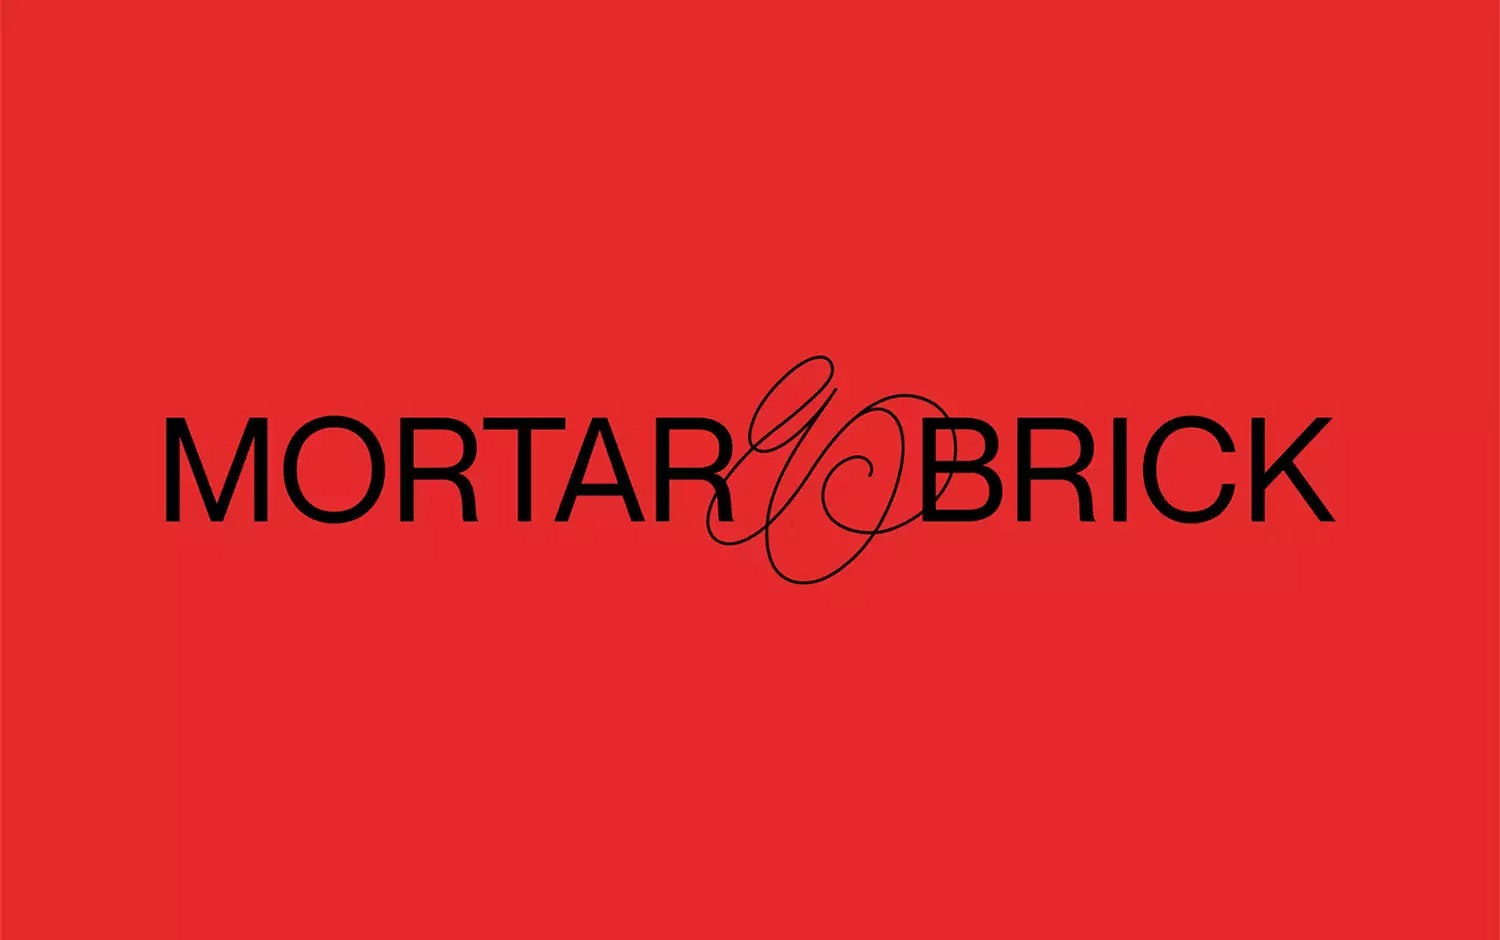 房地产咨询公司Mortar & Brick品牌视觉设计